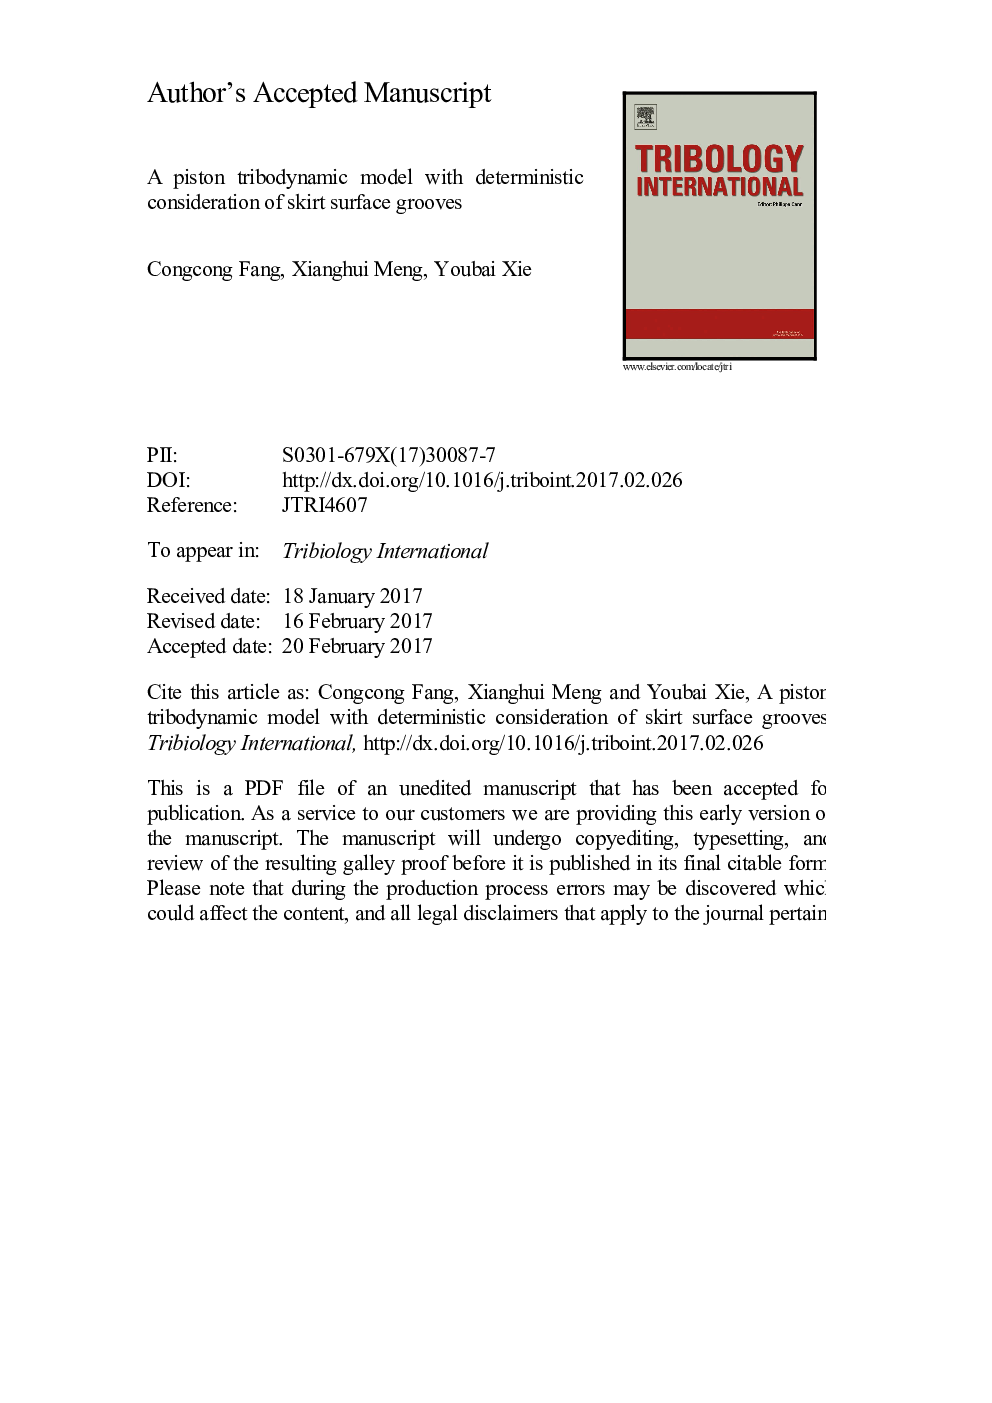 مدل تریبودینامیکی پیستون با توجه قطعی بر روی شیارهای سطح مقطع 